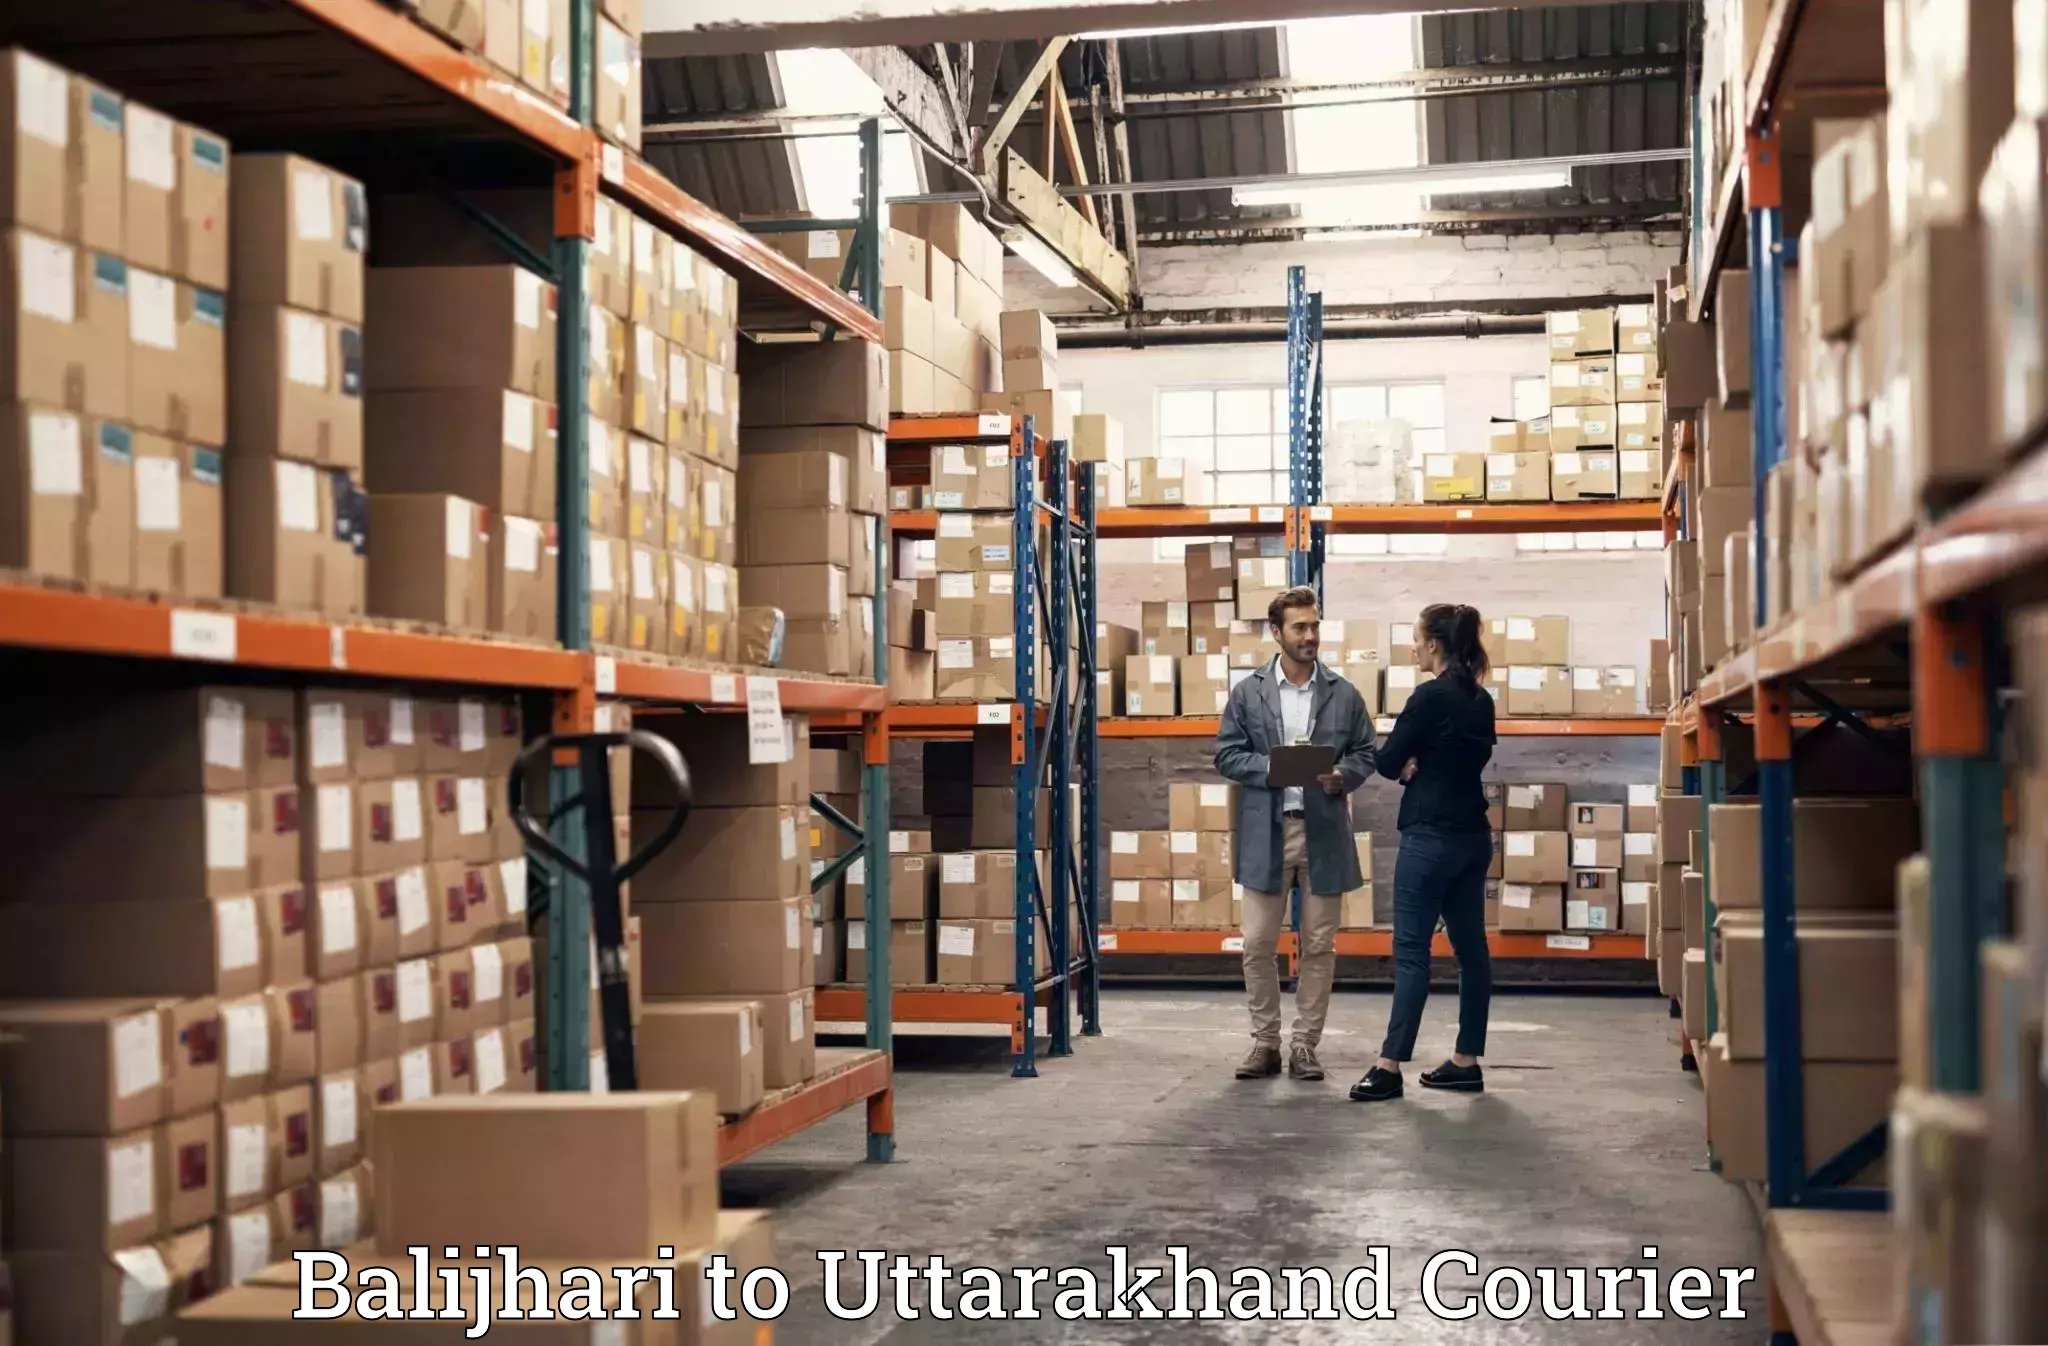 Furniture transport and storage in Balijhari to Uttarakhand